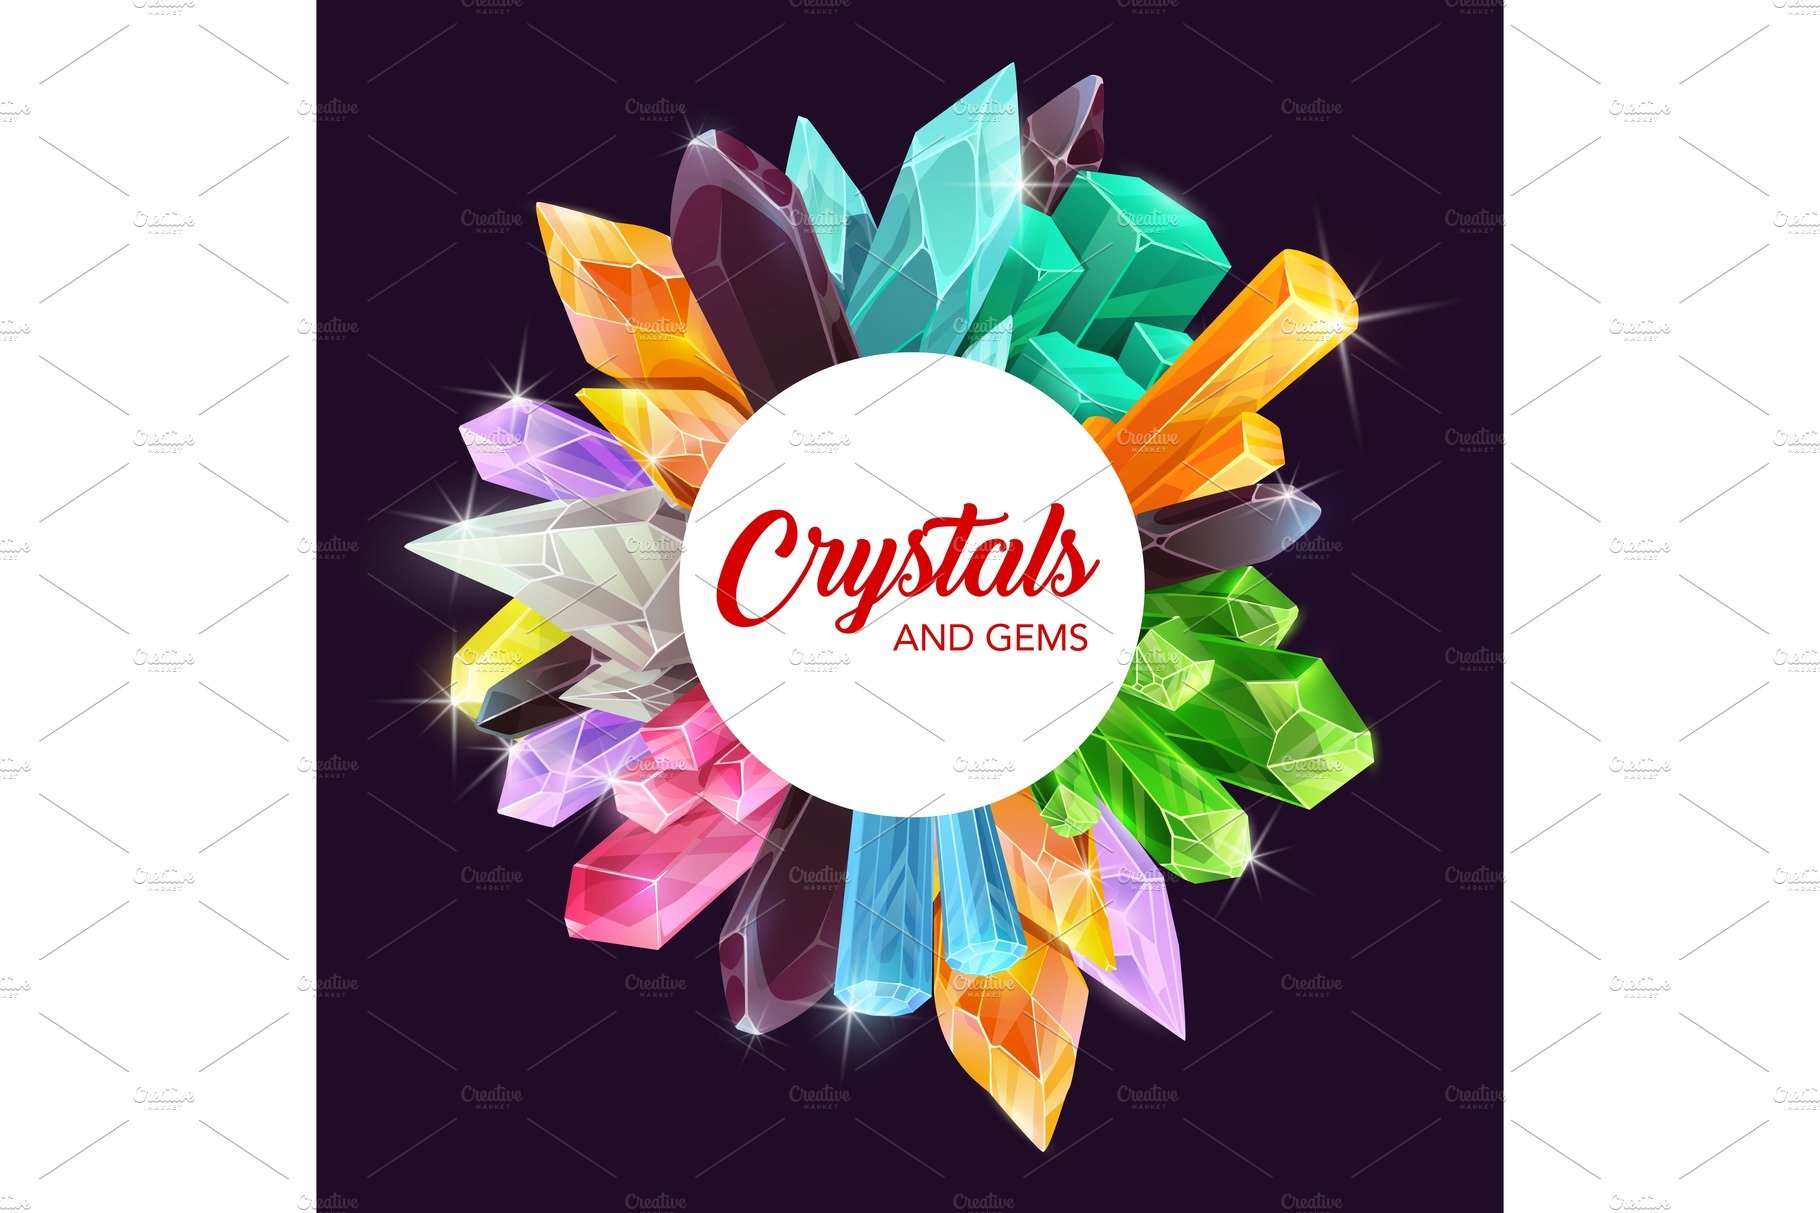 Crystals and gems frame, quartz cover image.